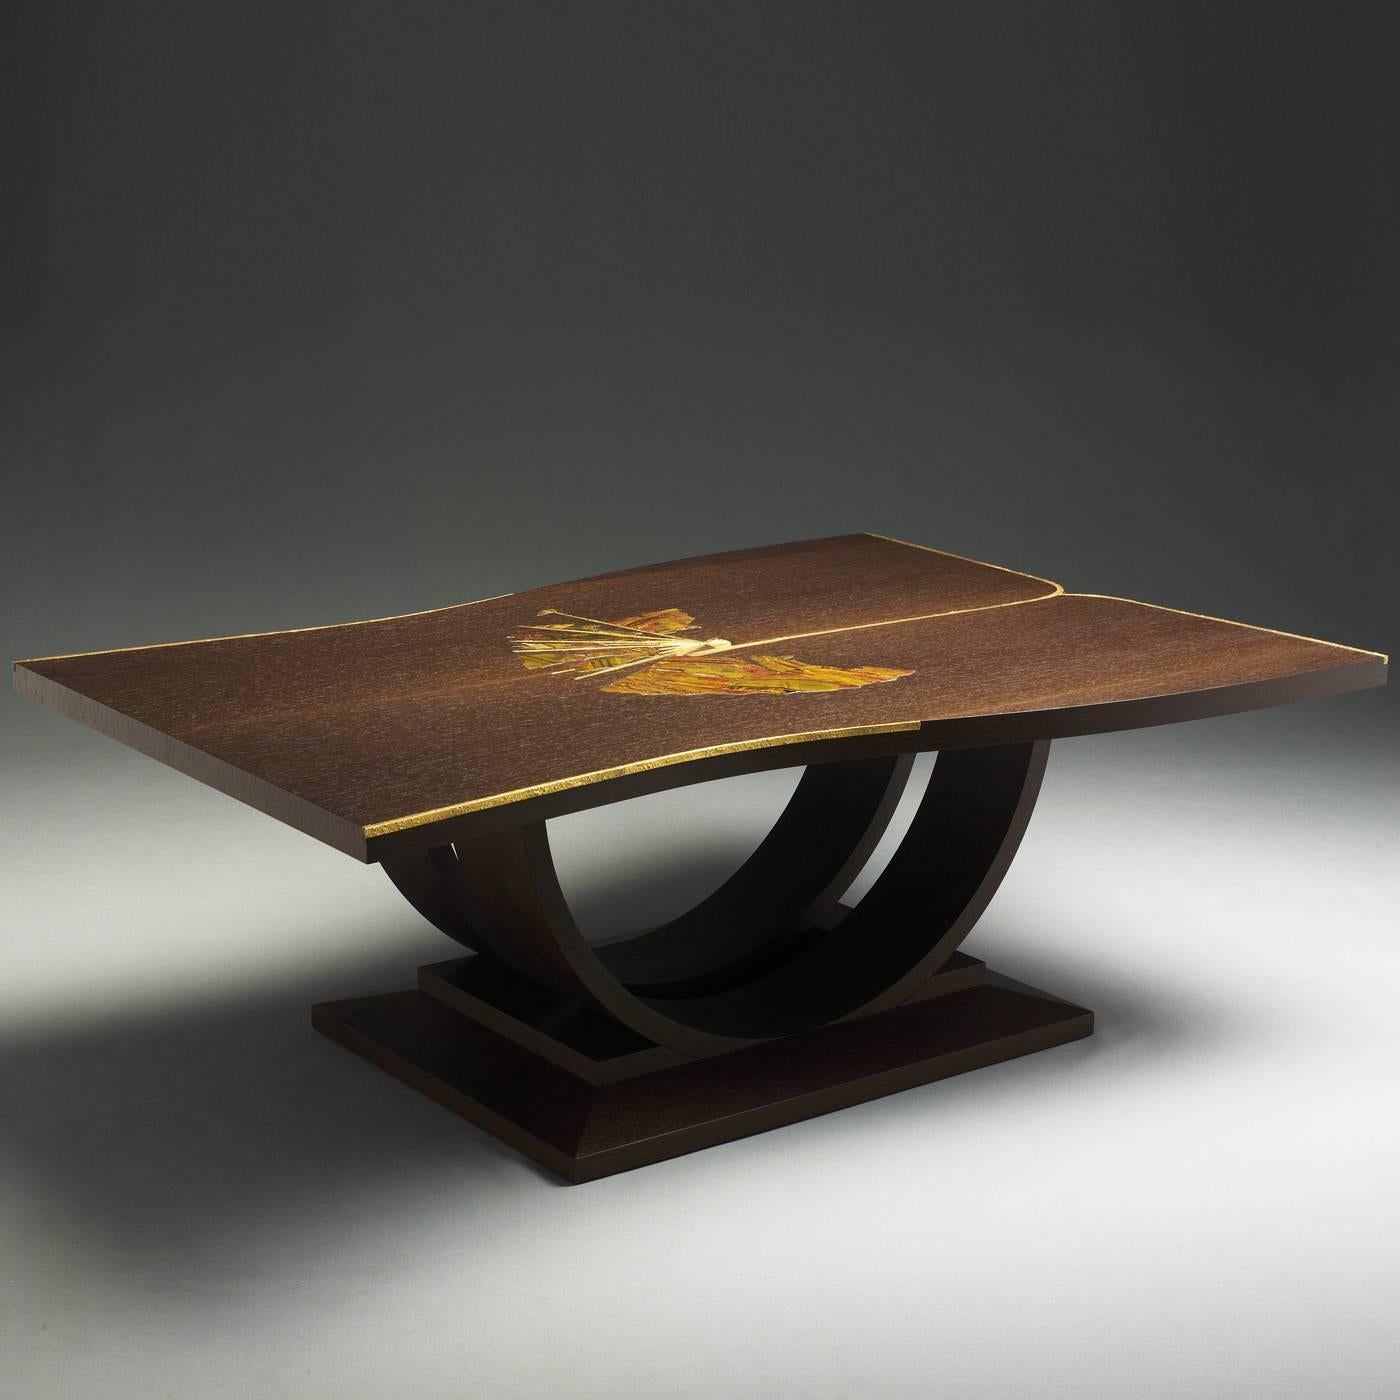 Dieser elegante Tisch ist von einem alten Kimono inspiriert und aus Wenge-Holz gefertigt. Die Platte ist mit einem Fächer aus Stein verziert. Die Stäbe, die den Fächer und die Kanten des Tisches hervorheben, sind aus Messing mit